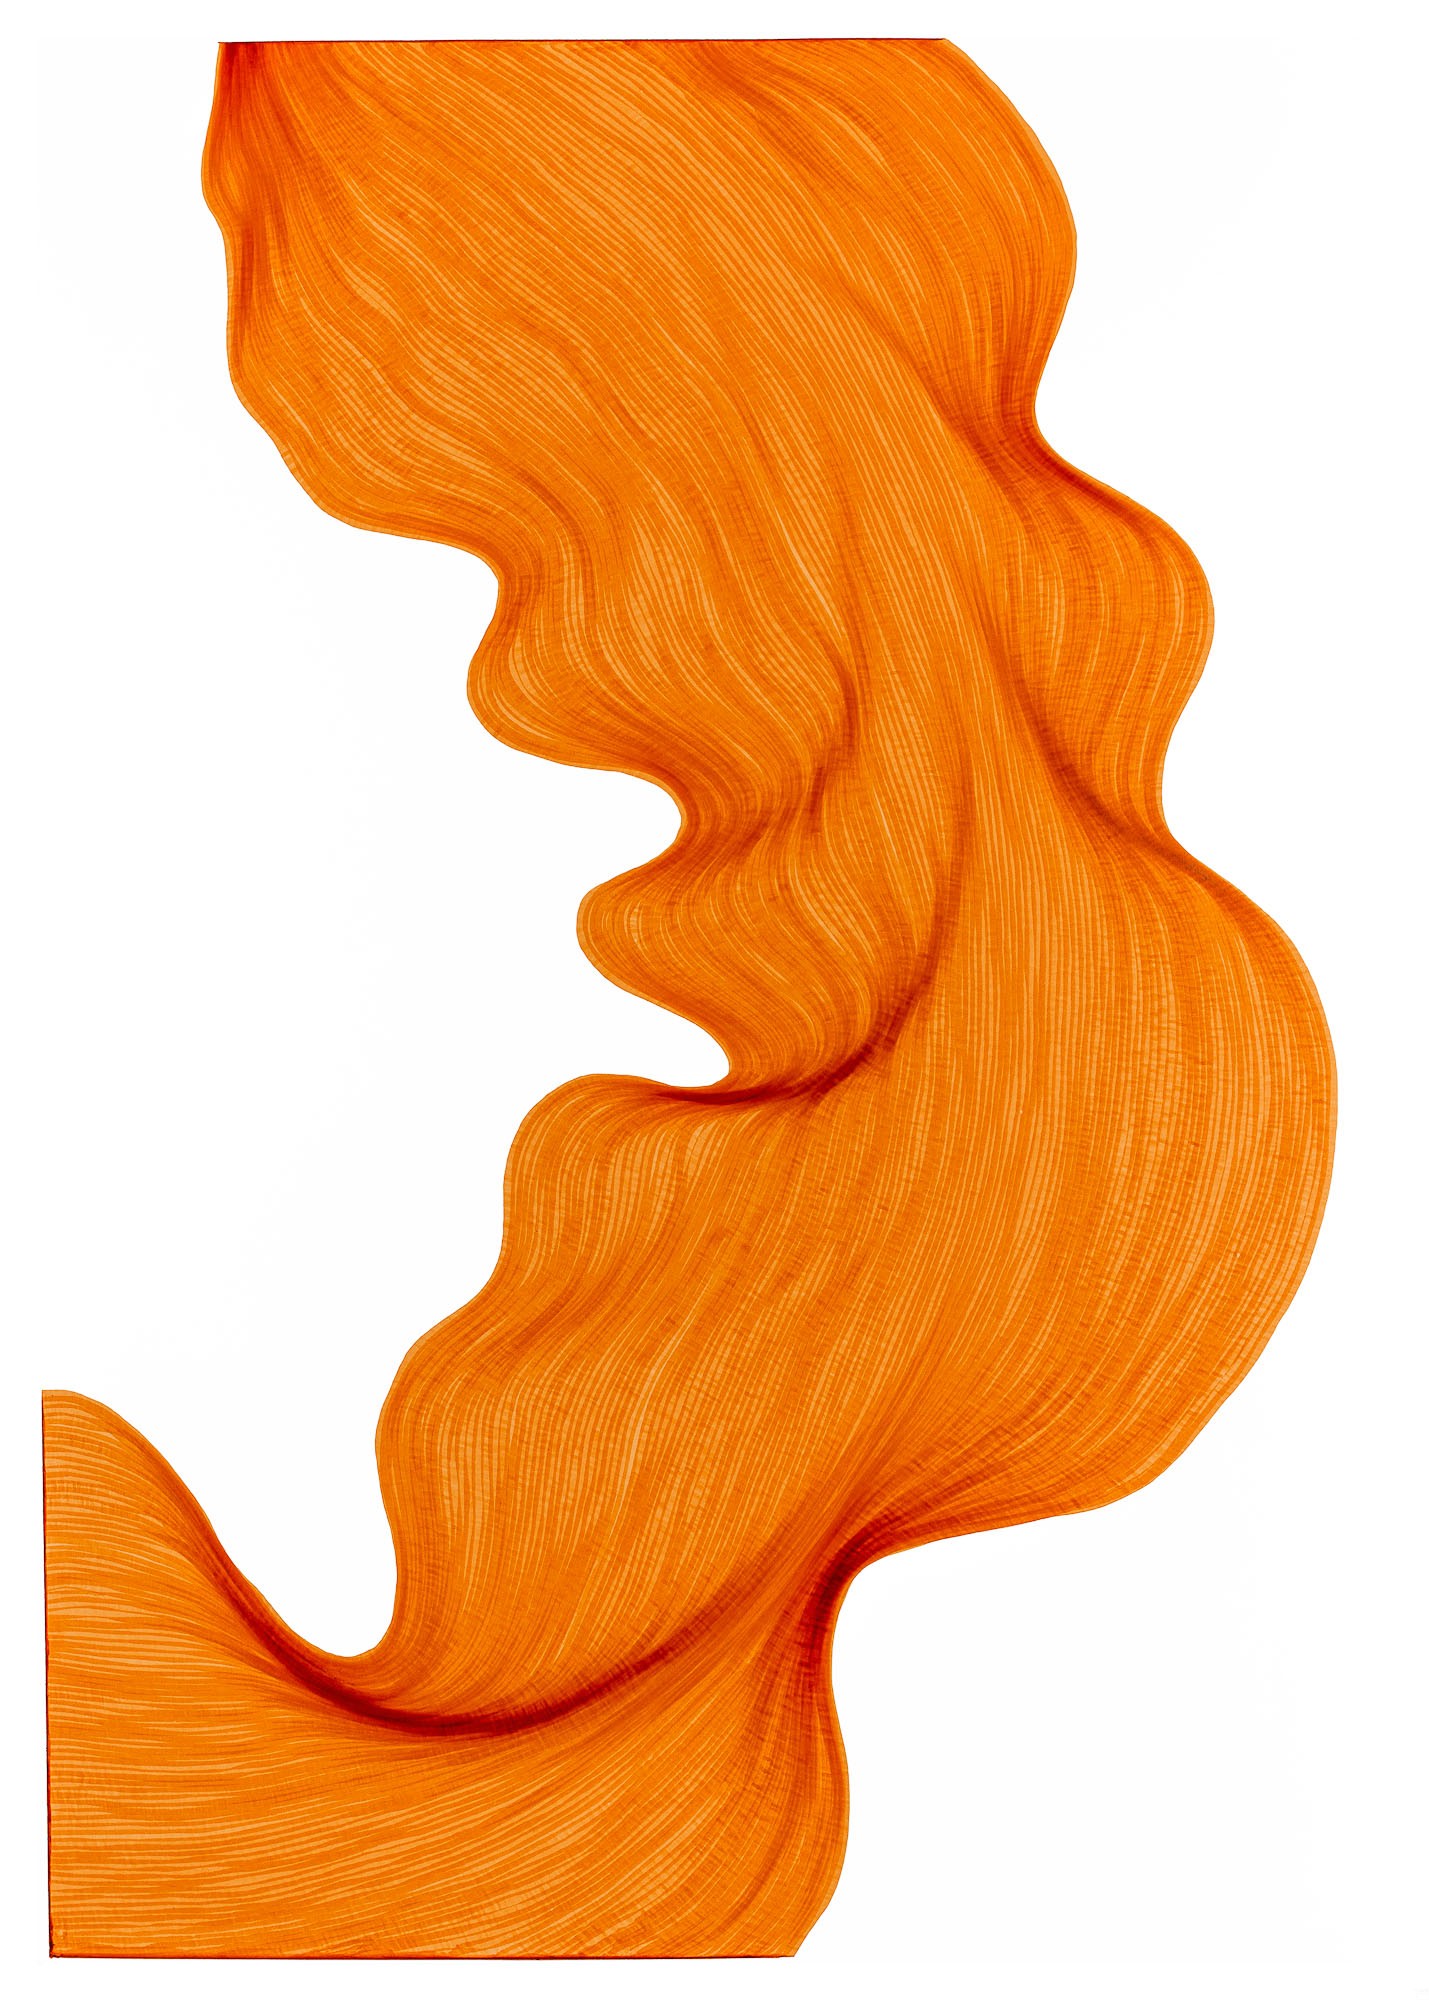 Bubbly Orange | Lali Torma | Zeichnung | Kalligraphie Tinte auf Papier